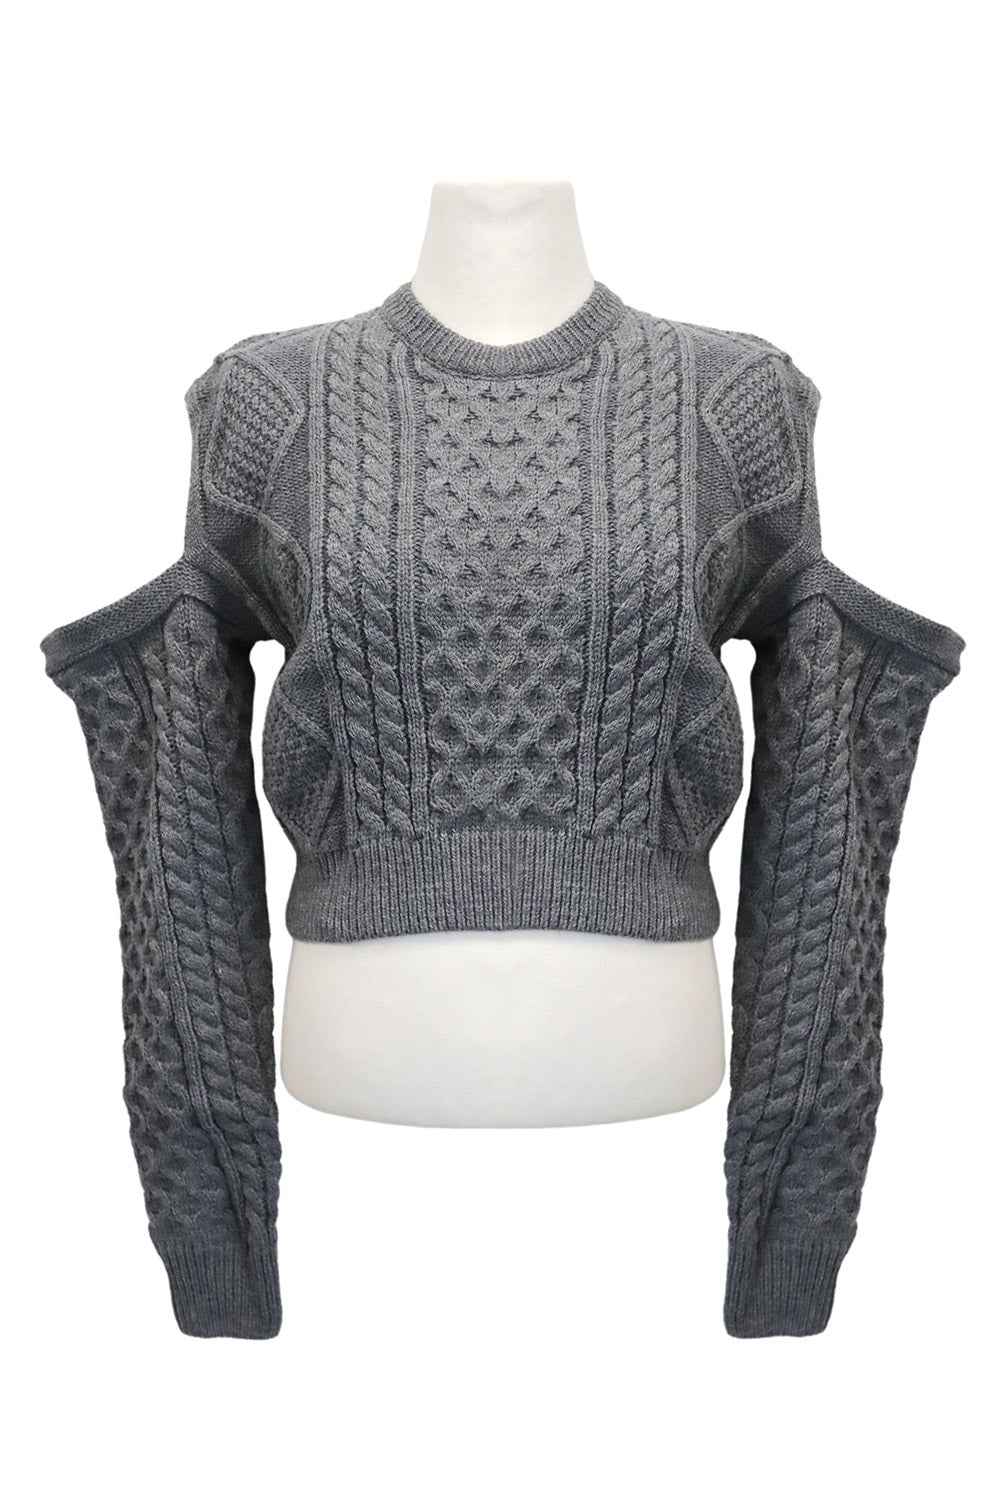 storets.com Cali Cold Shoulder Knit Sweater